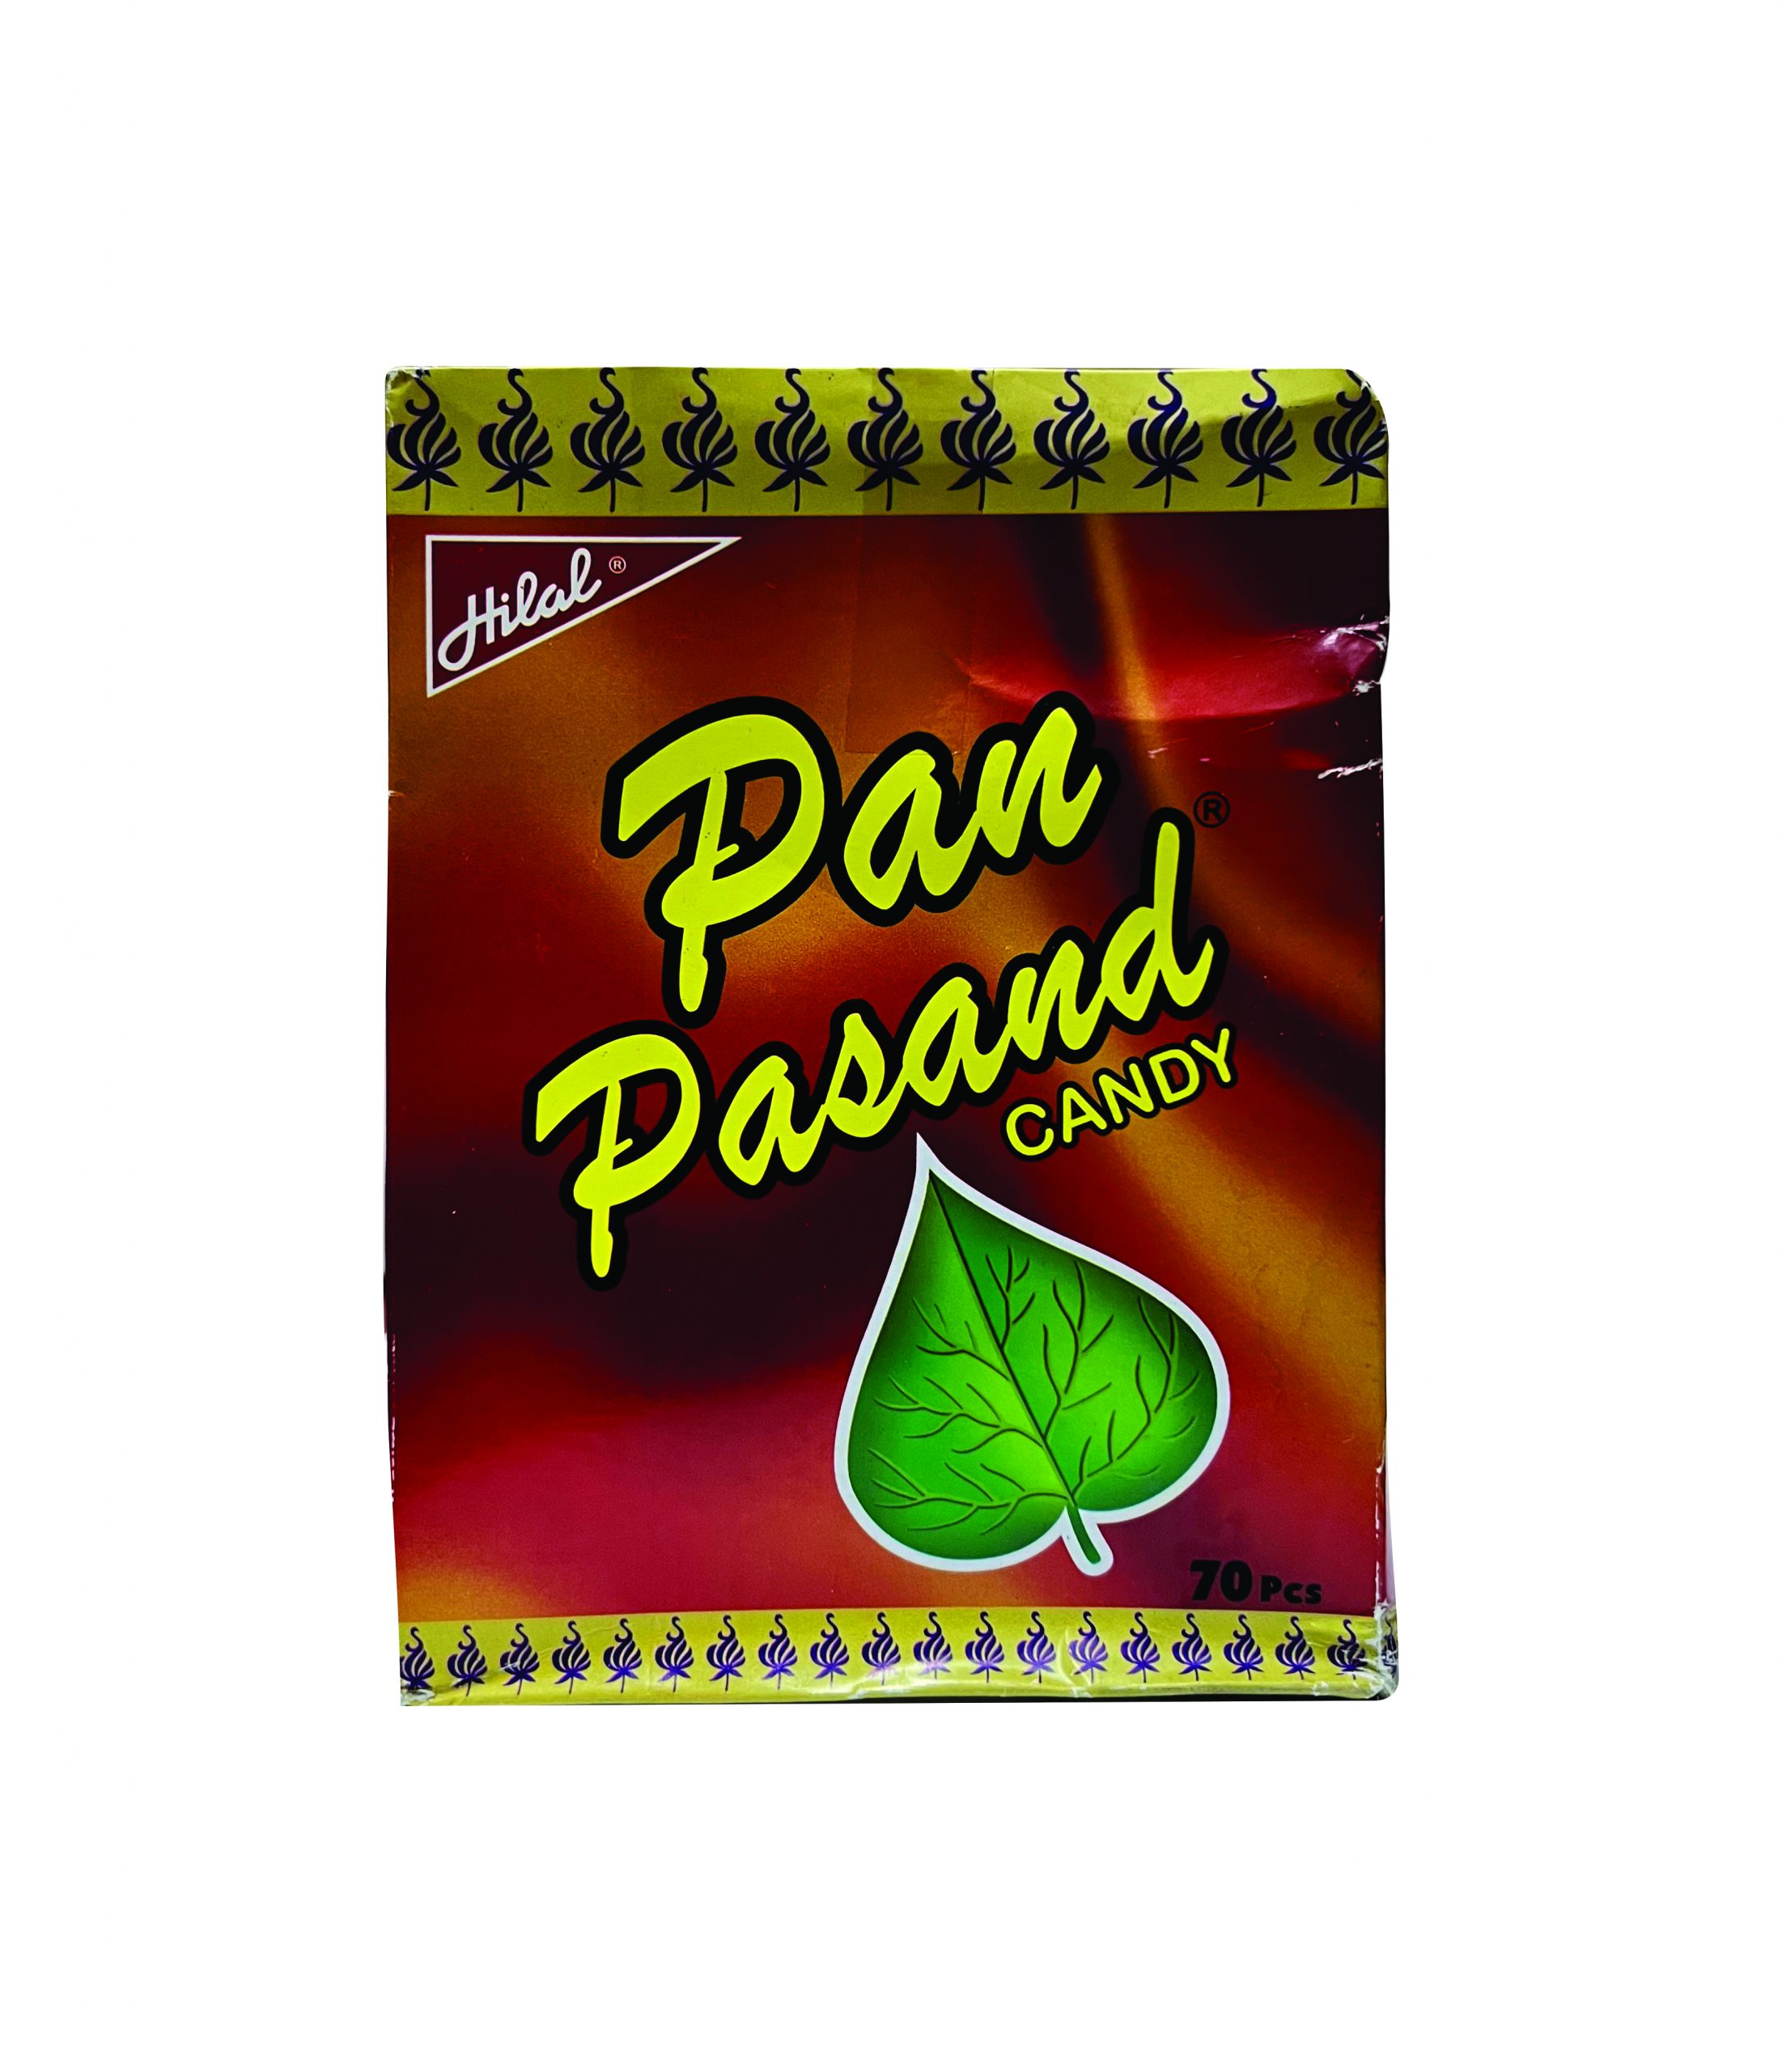 Pan Pasand candy  Hilal Pan Pasand candy mai hai asli meethay